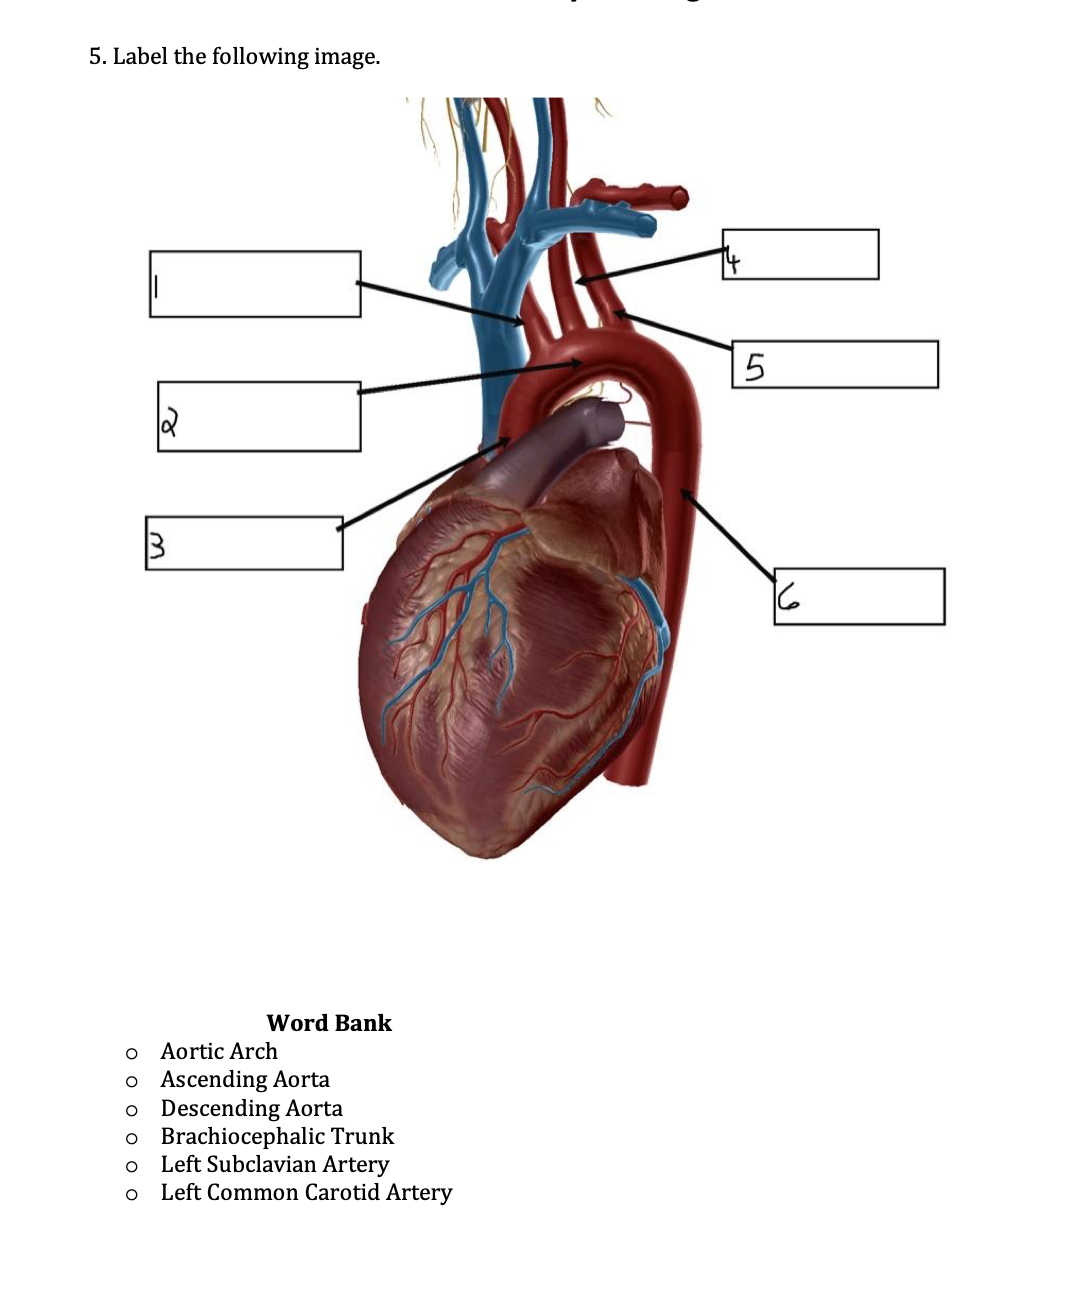 5. Label the following image.
Word Bank
Aortic Arch
o Ascending Aorta
o Descending Aorta
o Brachiocephalic Trunk
Left Subclavian Artery
Left Common Carotid Artery
